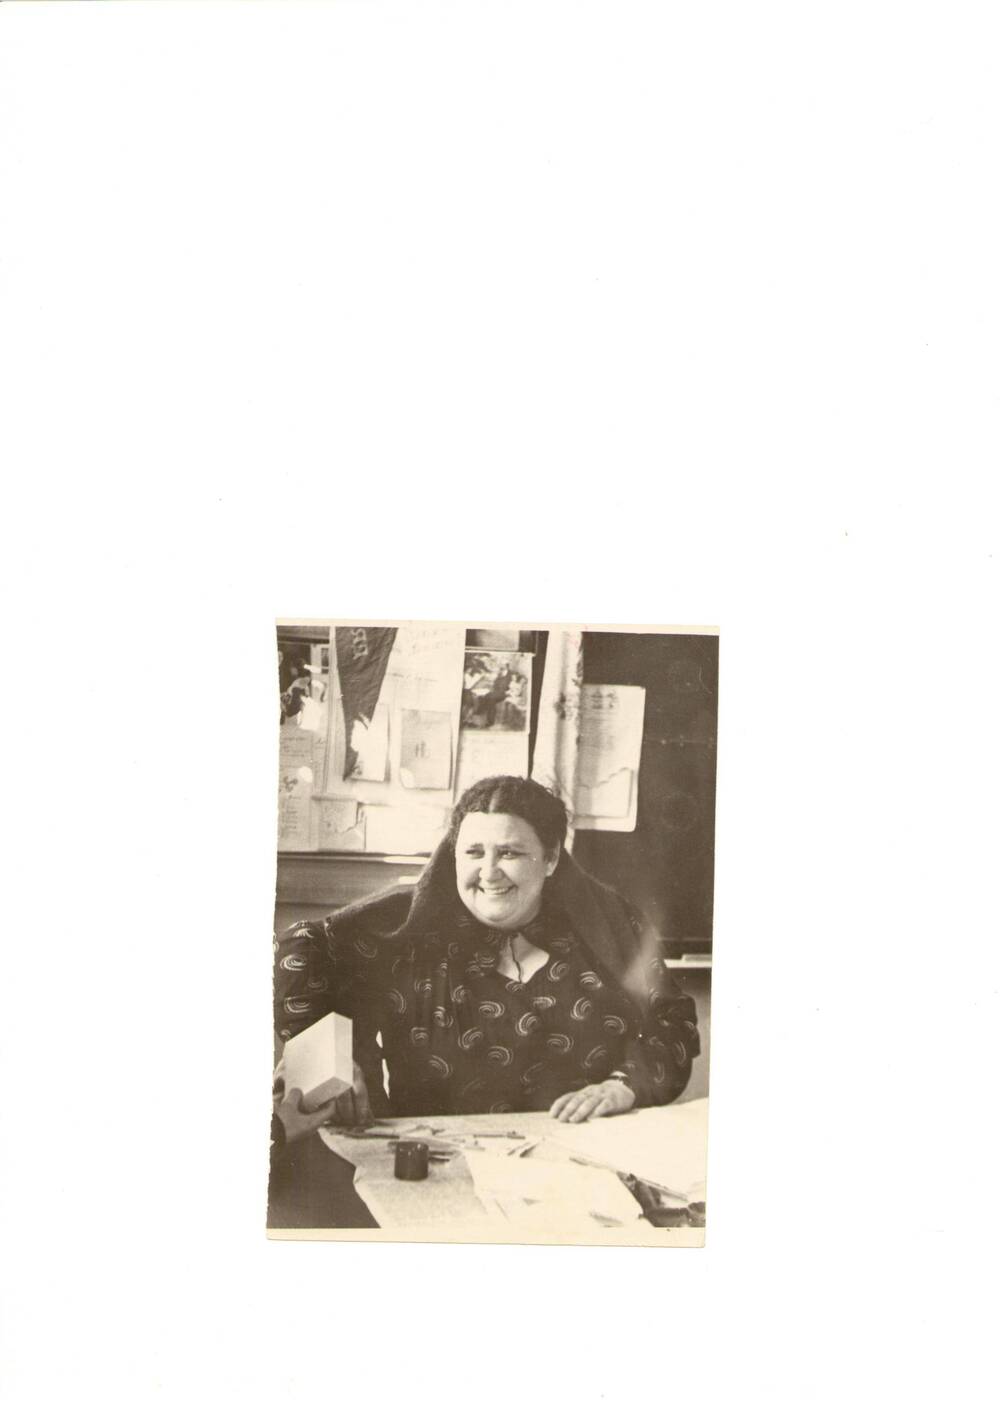 Фото черно-белое, поясное   Спиридоновой-Сисекиной Т. К ., Г. Калач-на-Дону, 08.03.1958